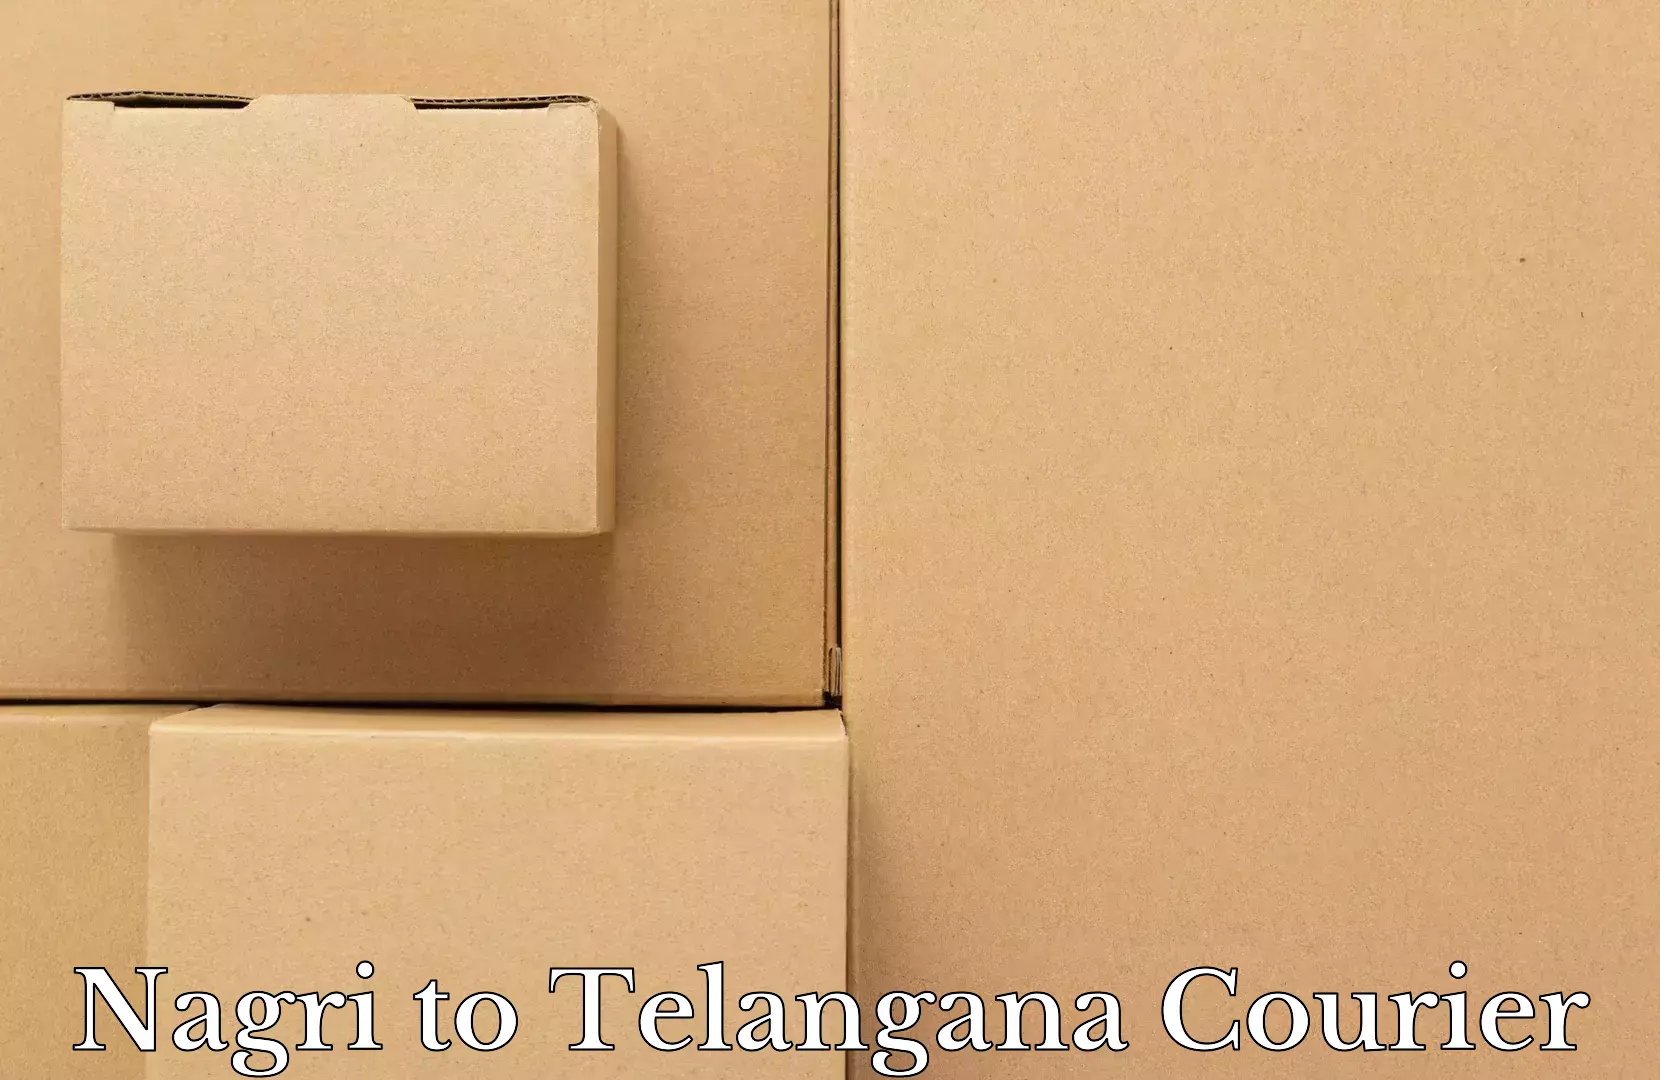 Electronic items luggage shipping Nagri to University of Hyderabad